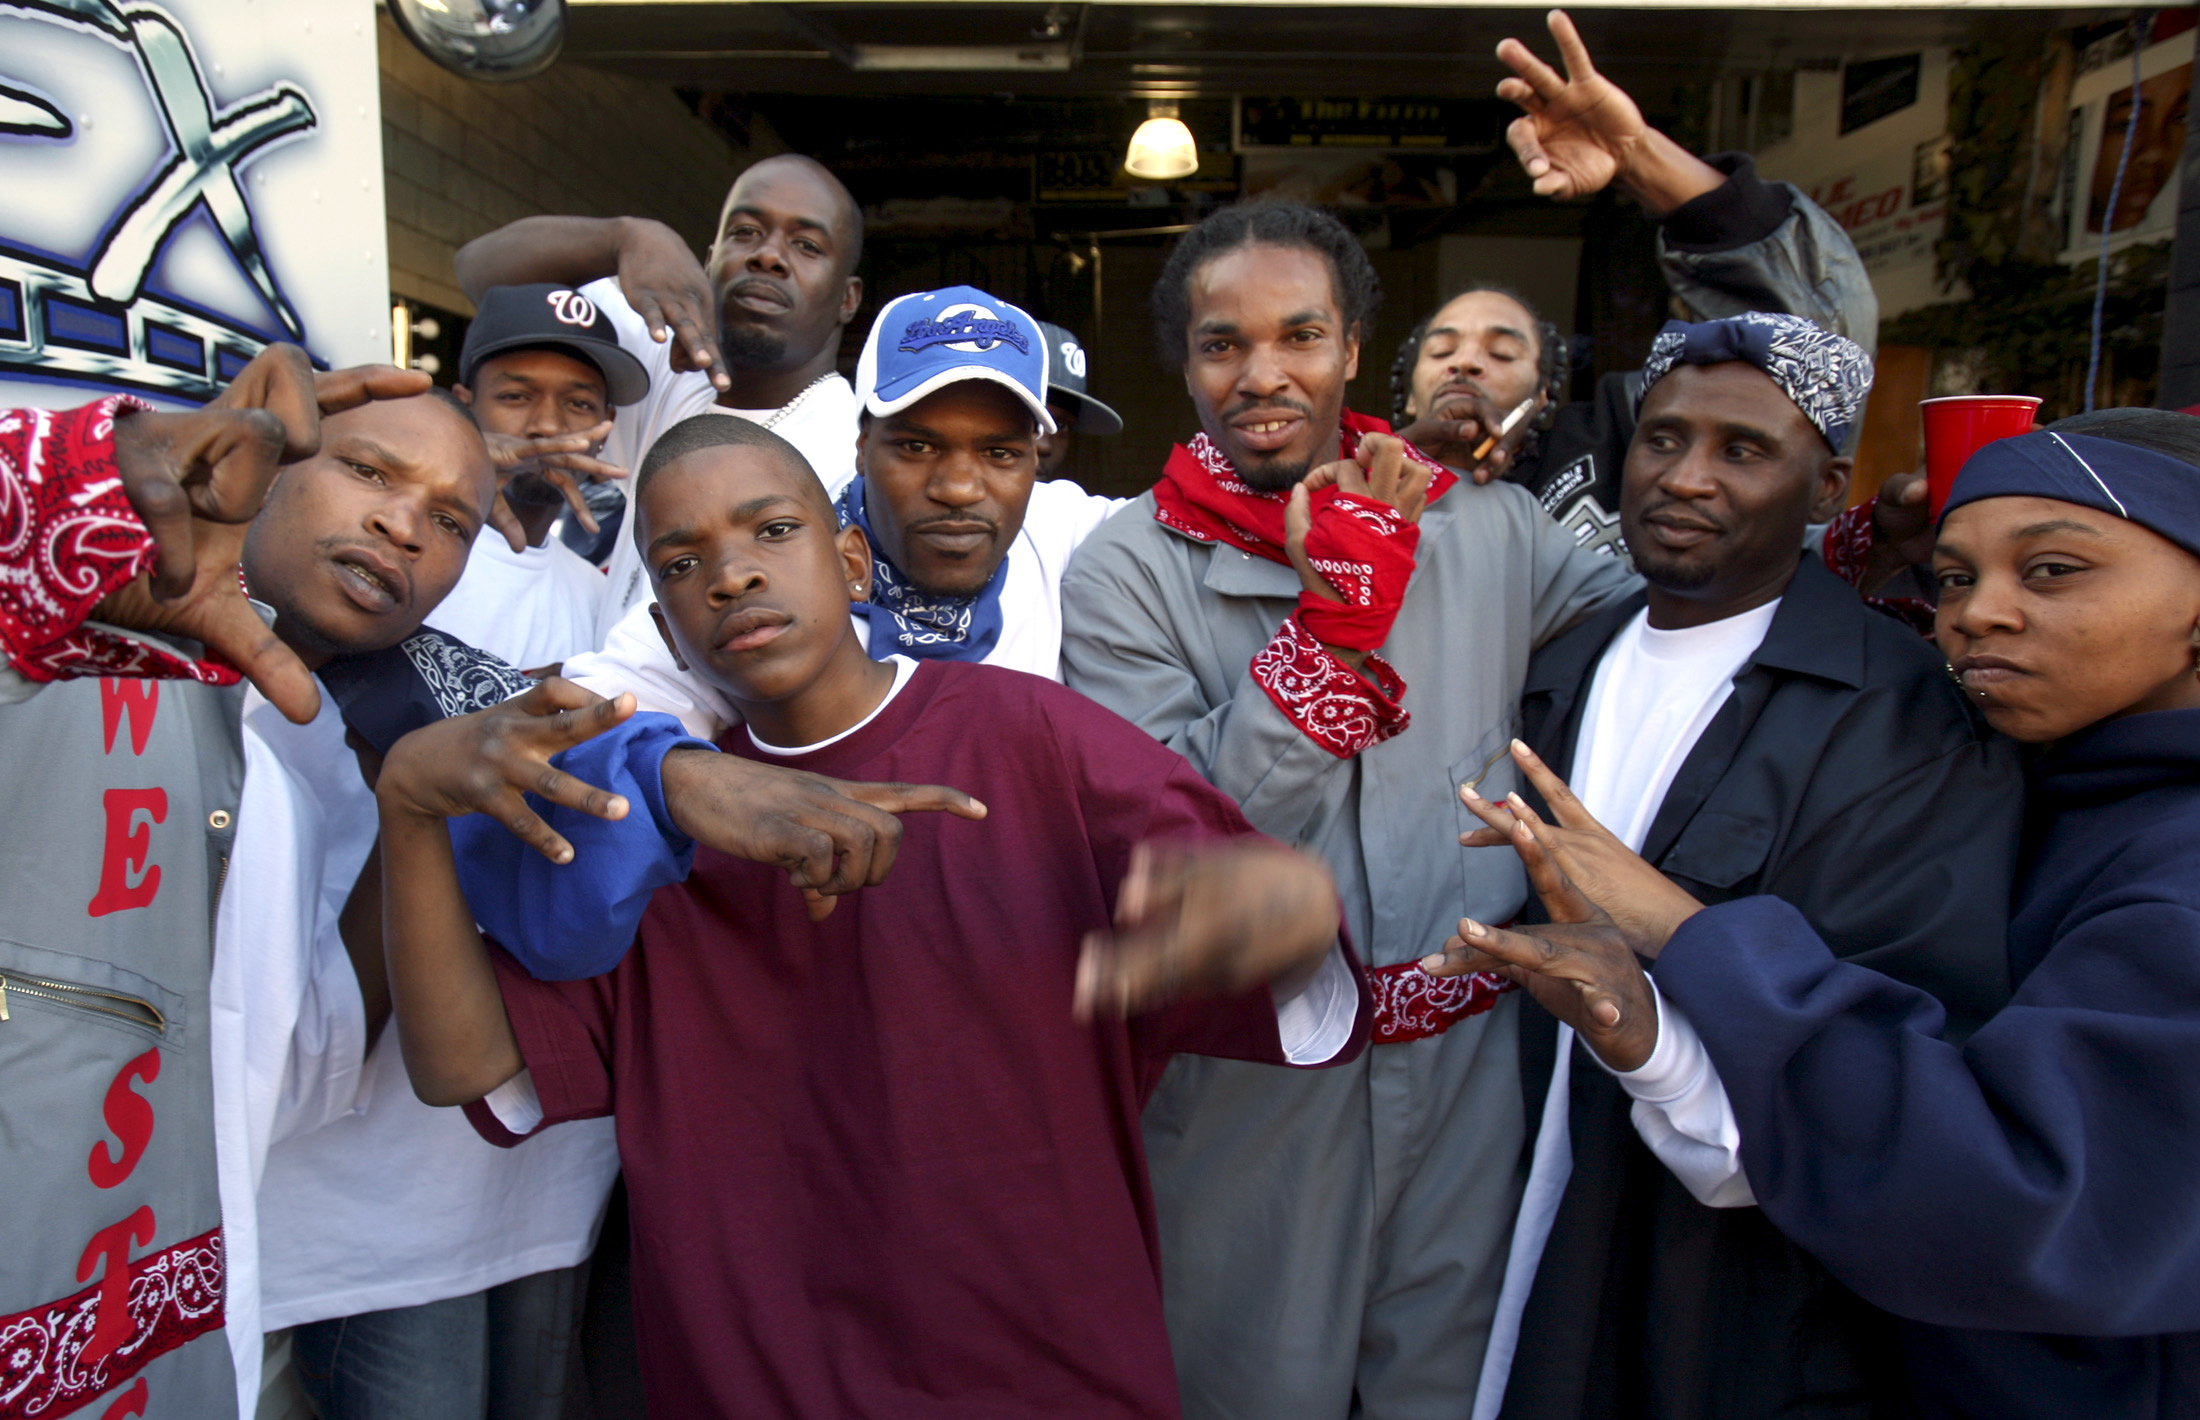 Jefferson Flats gang - организованная преступная группировка, созданная в н...